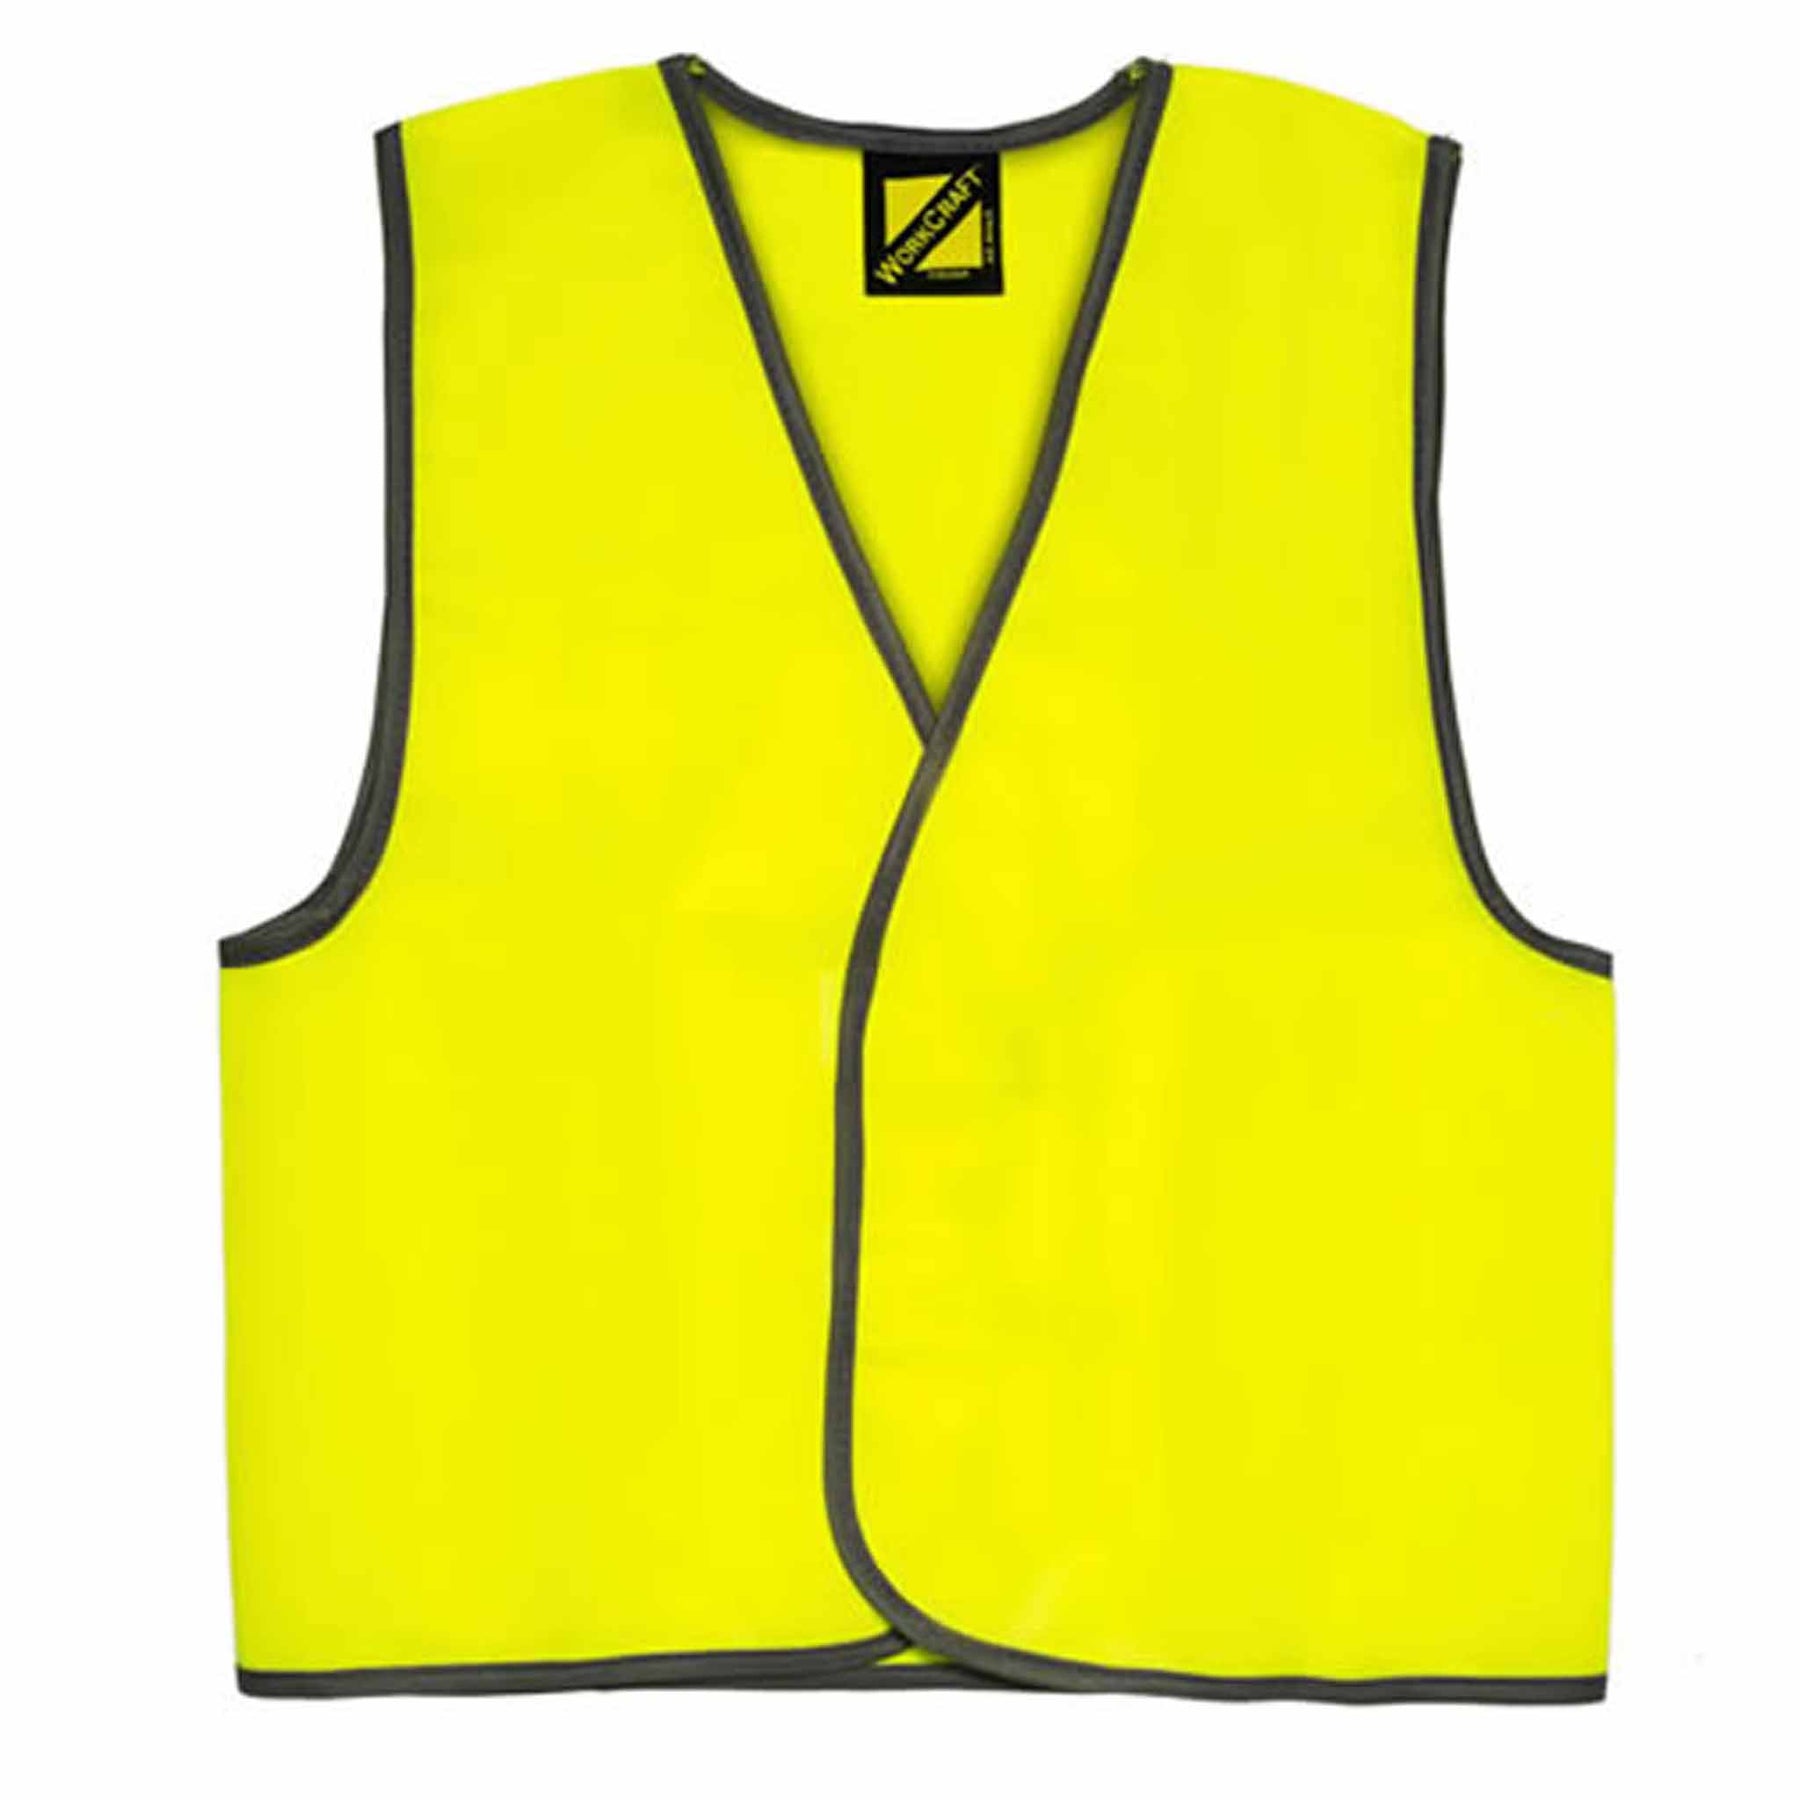 kids yellow hi vis safety vest